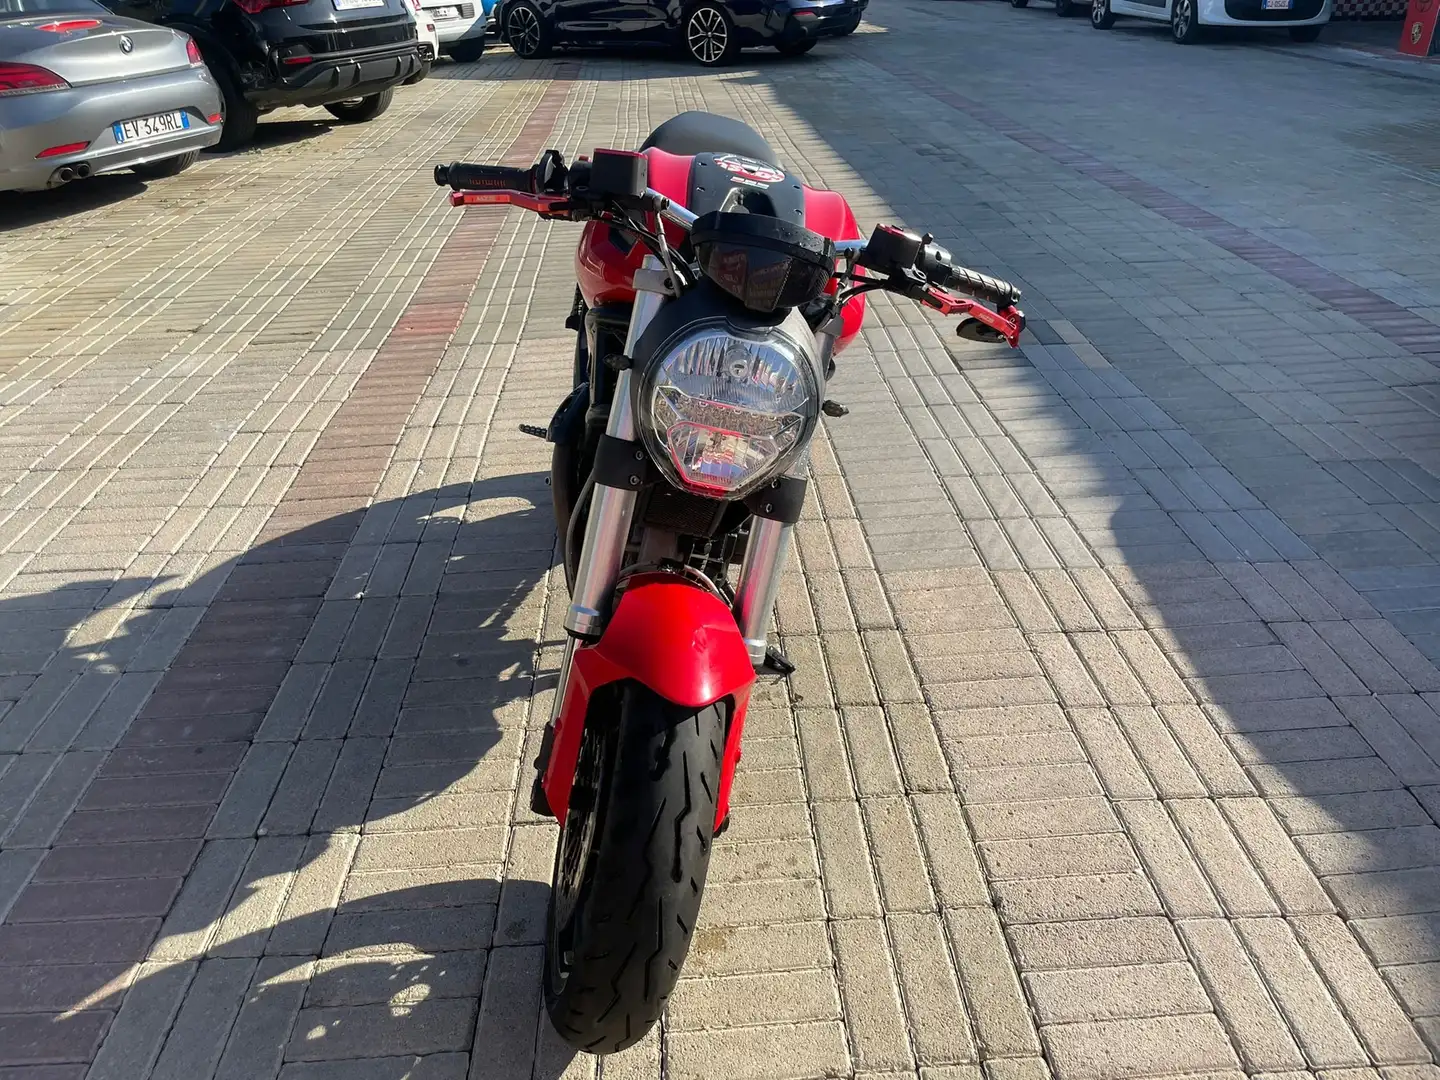 Ducati Monster 696 Červená - 2